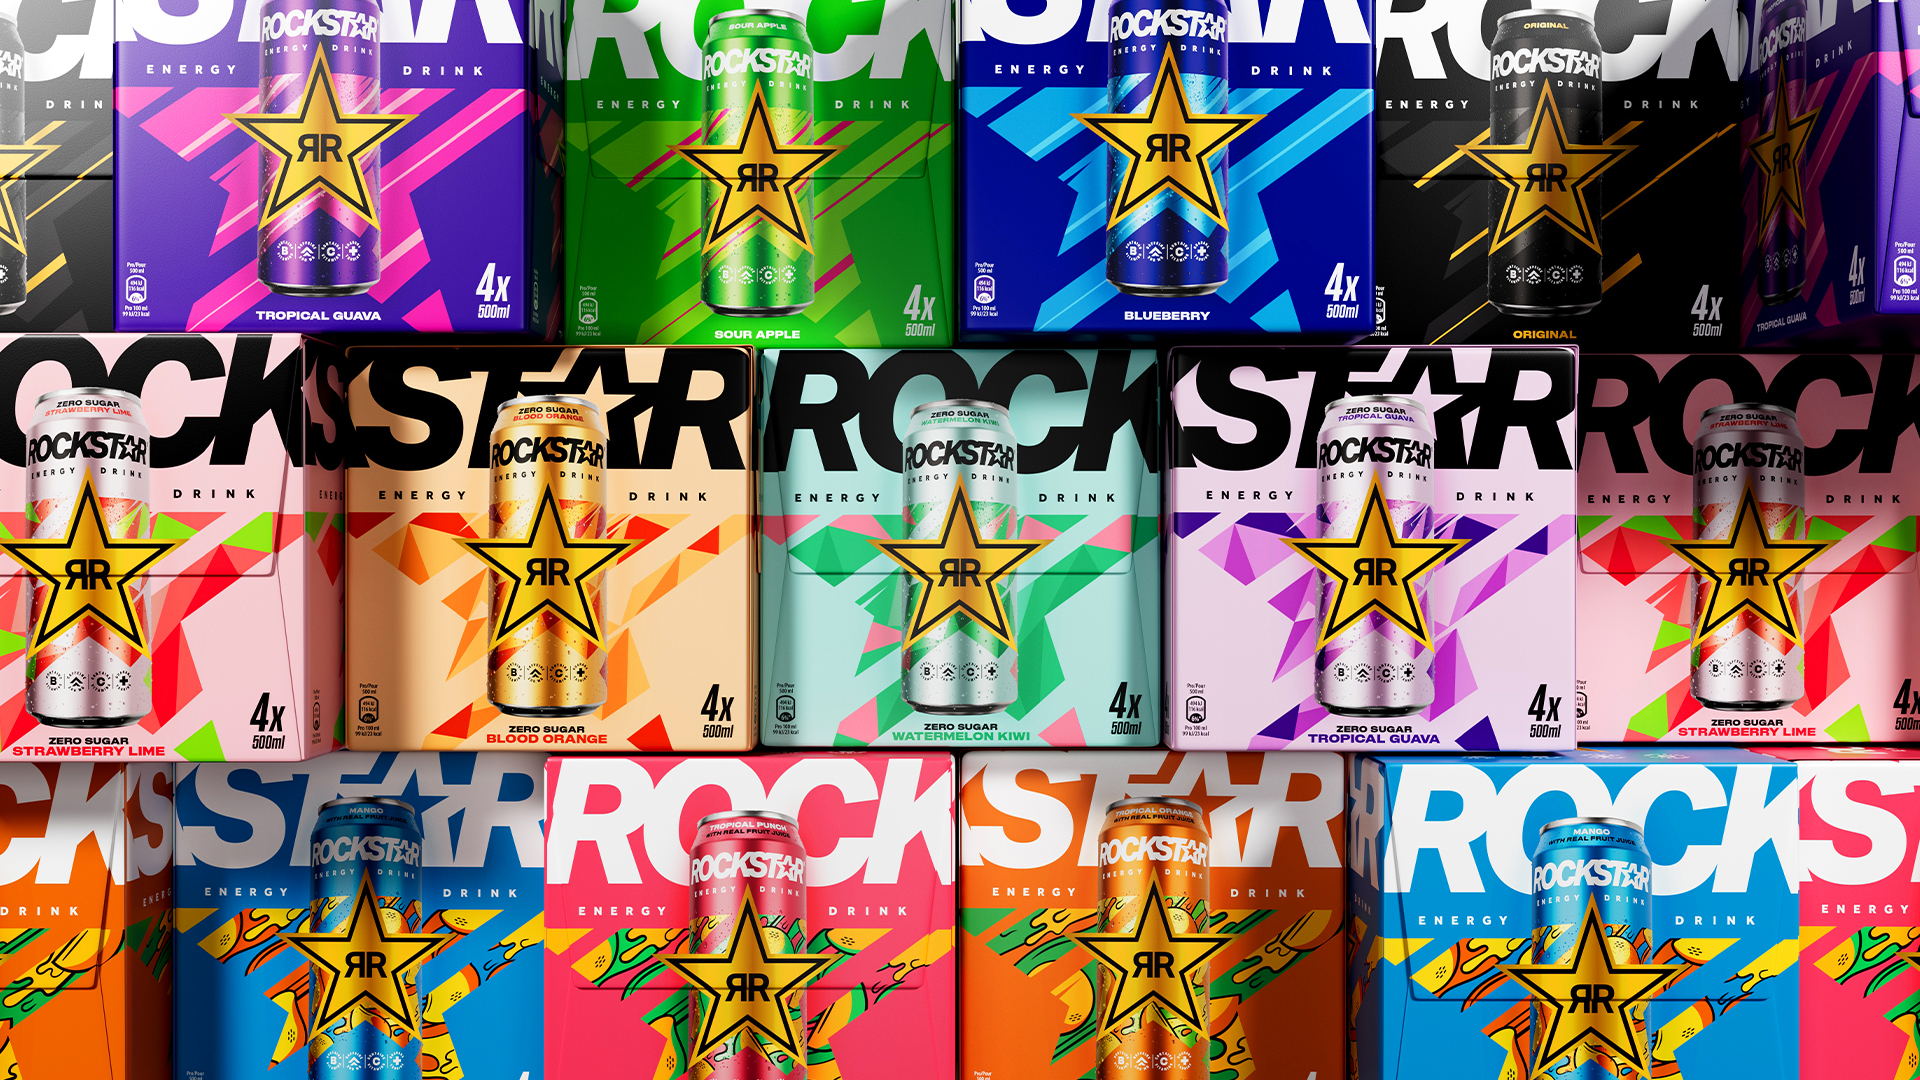 Rockstar PressPlay Carton Packaging.jpg